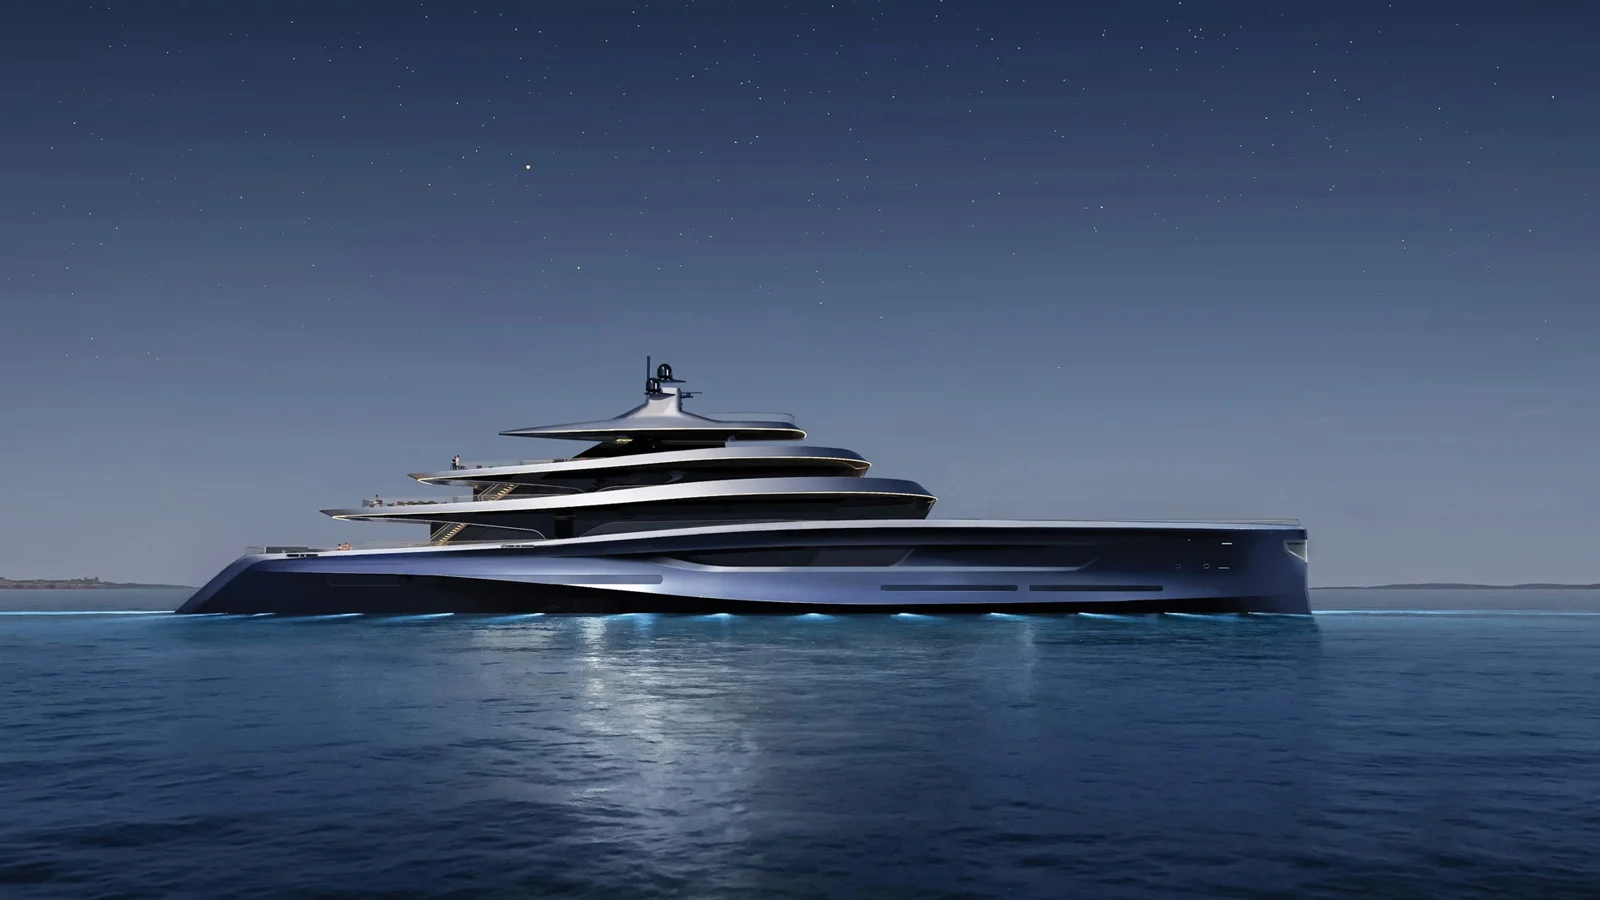 Aeolus 80 от Taylor Design: Перевоплощение одноименной 131-метровой яхты, в основе дизайна которой "отсылка к романтике океана, воплощенной в парусных яхтах J-класса прошлого века"